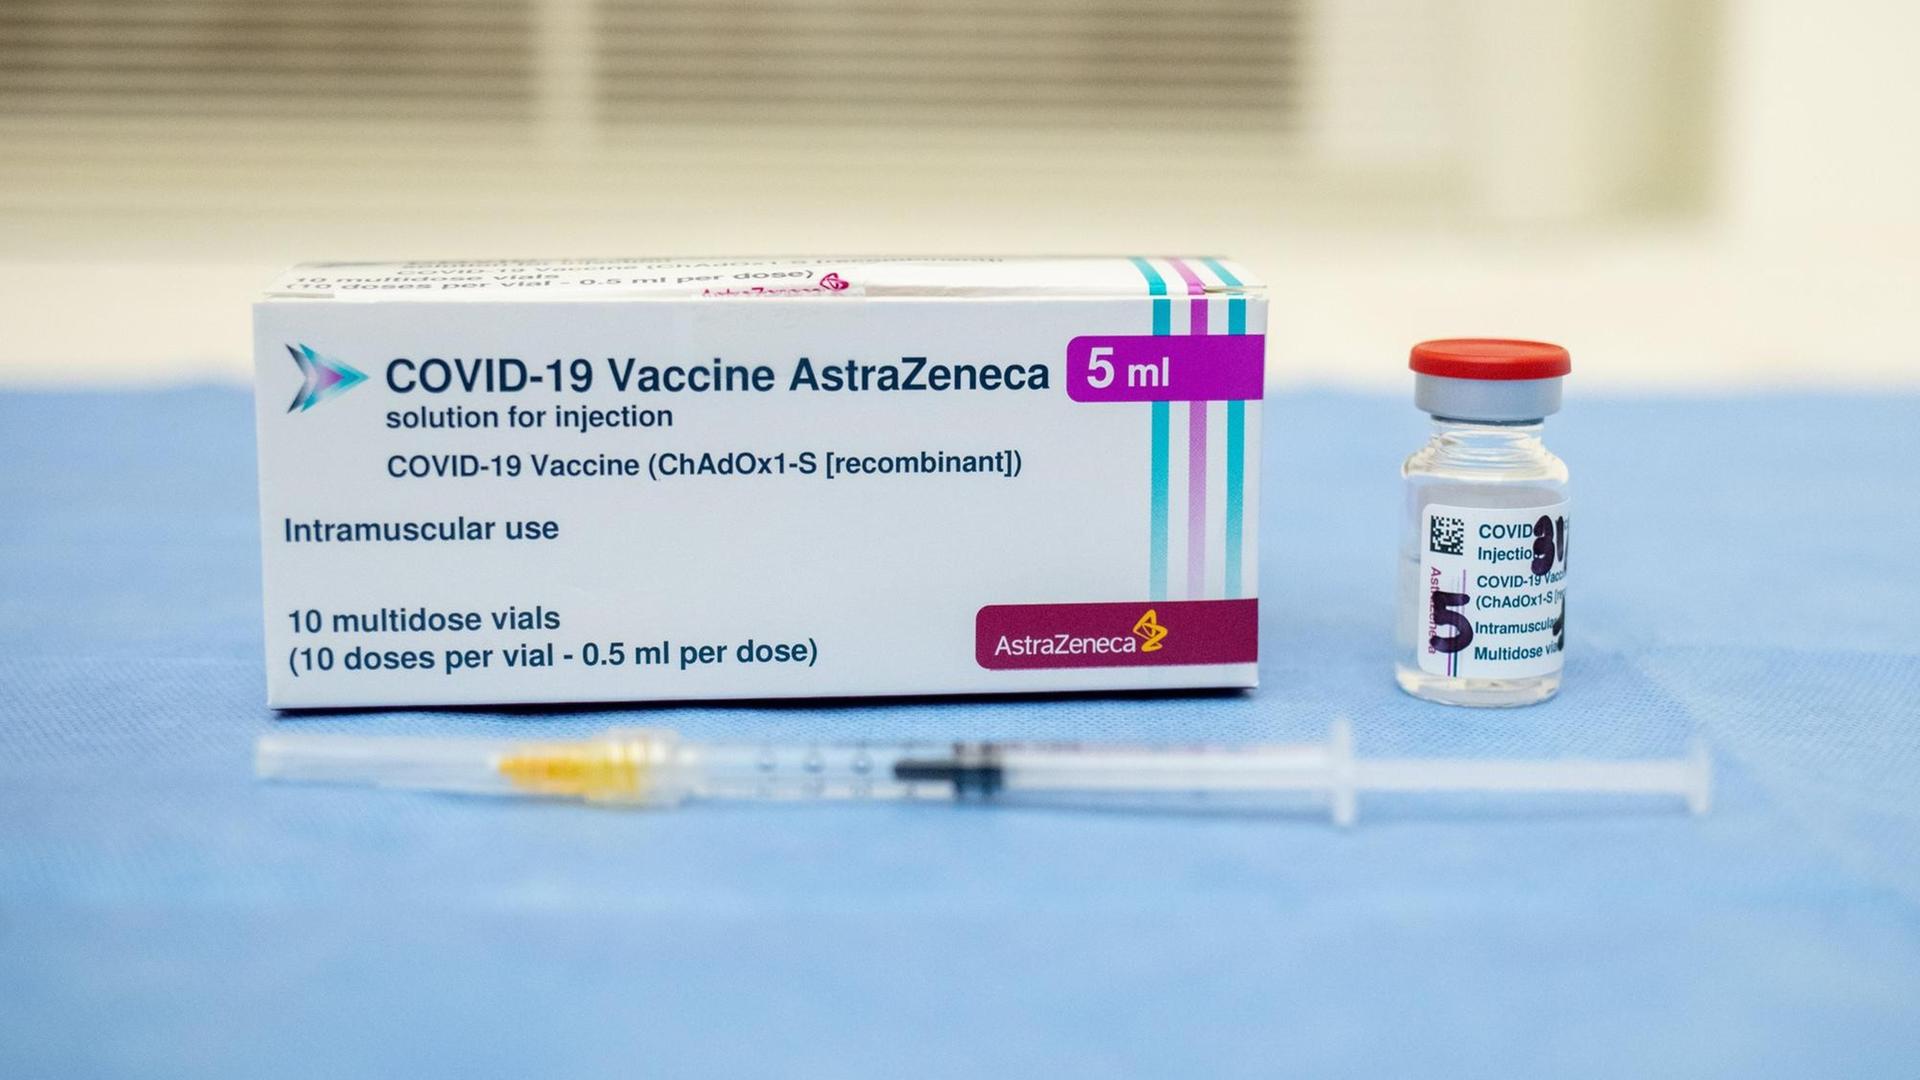 Die Verpackung des Corona-Impfstoffs von Astrazeneca. Daneben eine Ampulle und davor eine Spritze, mit der der Impfstoff verabreicht werden kann.